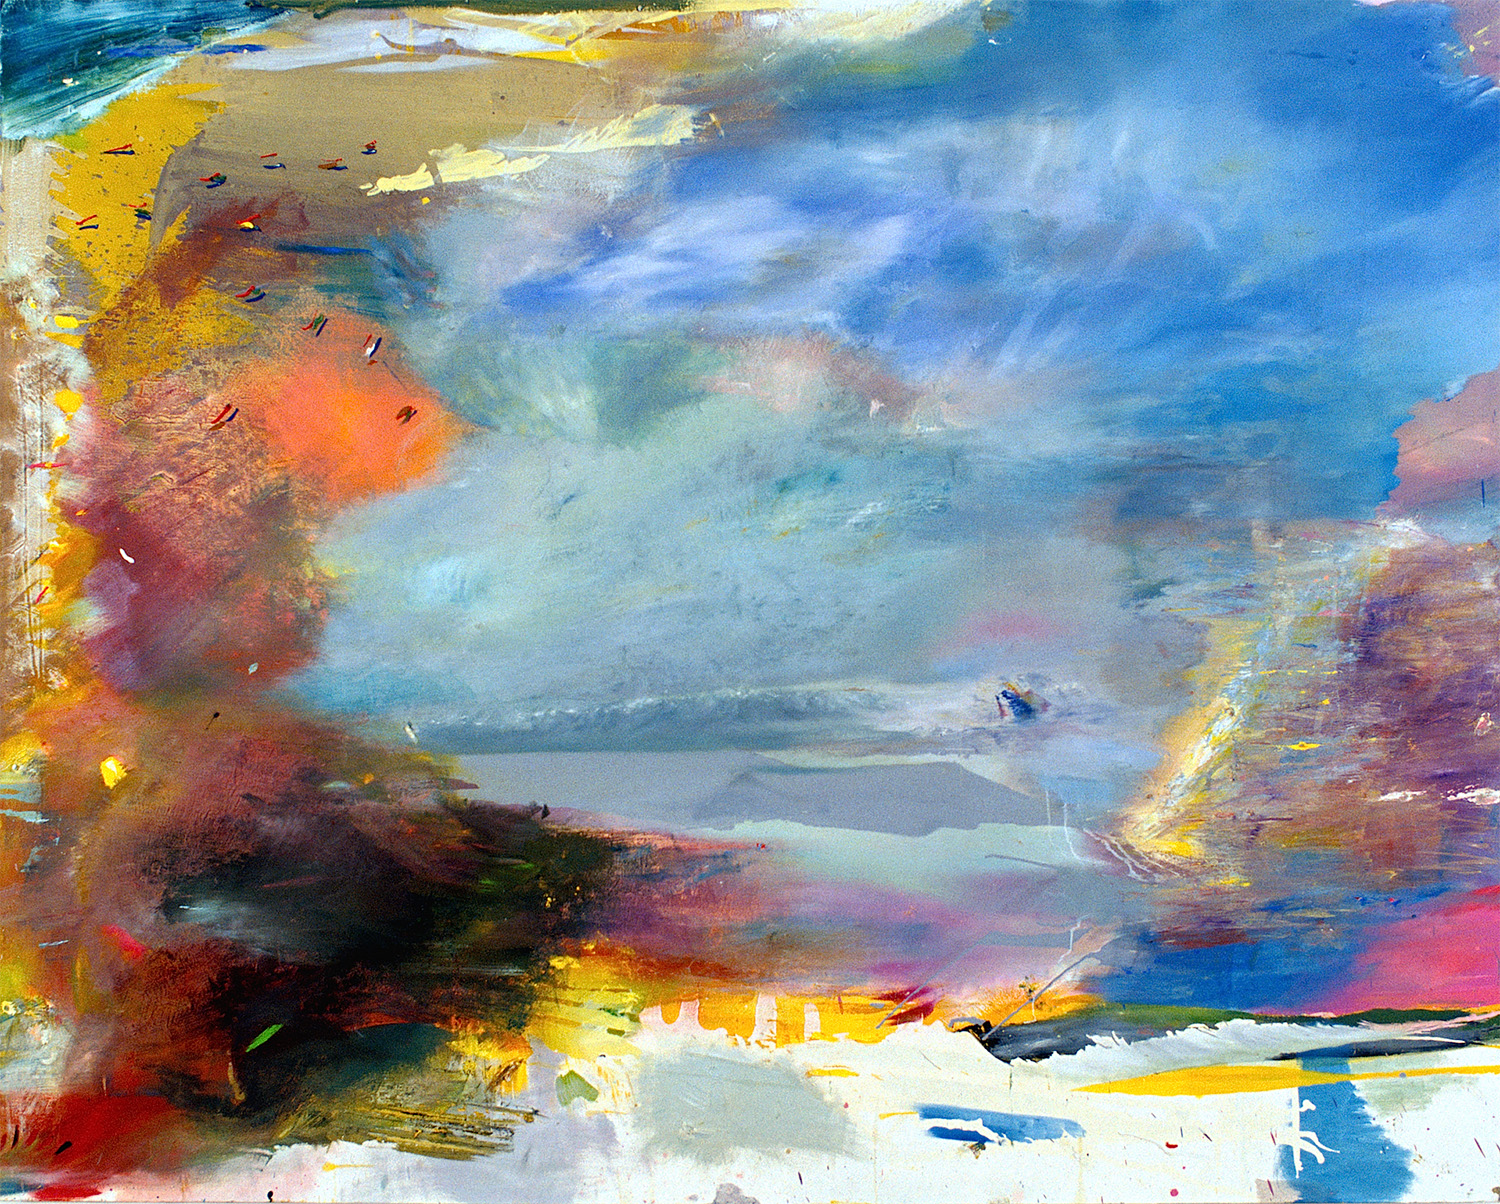   Skyr , 2005, oil on canvas, 96 x 120 inches 